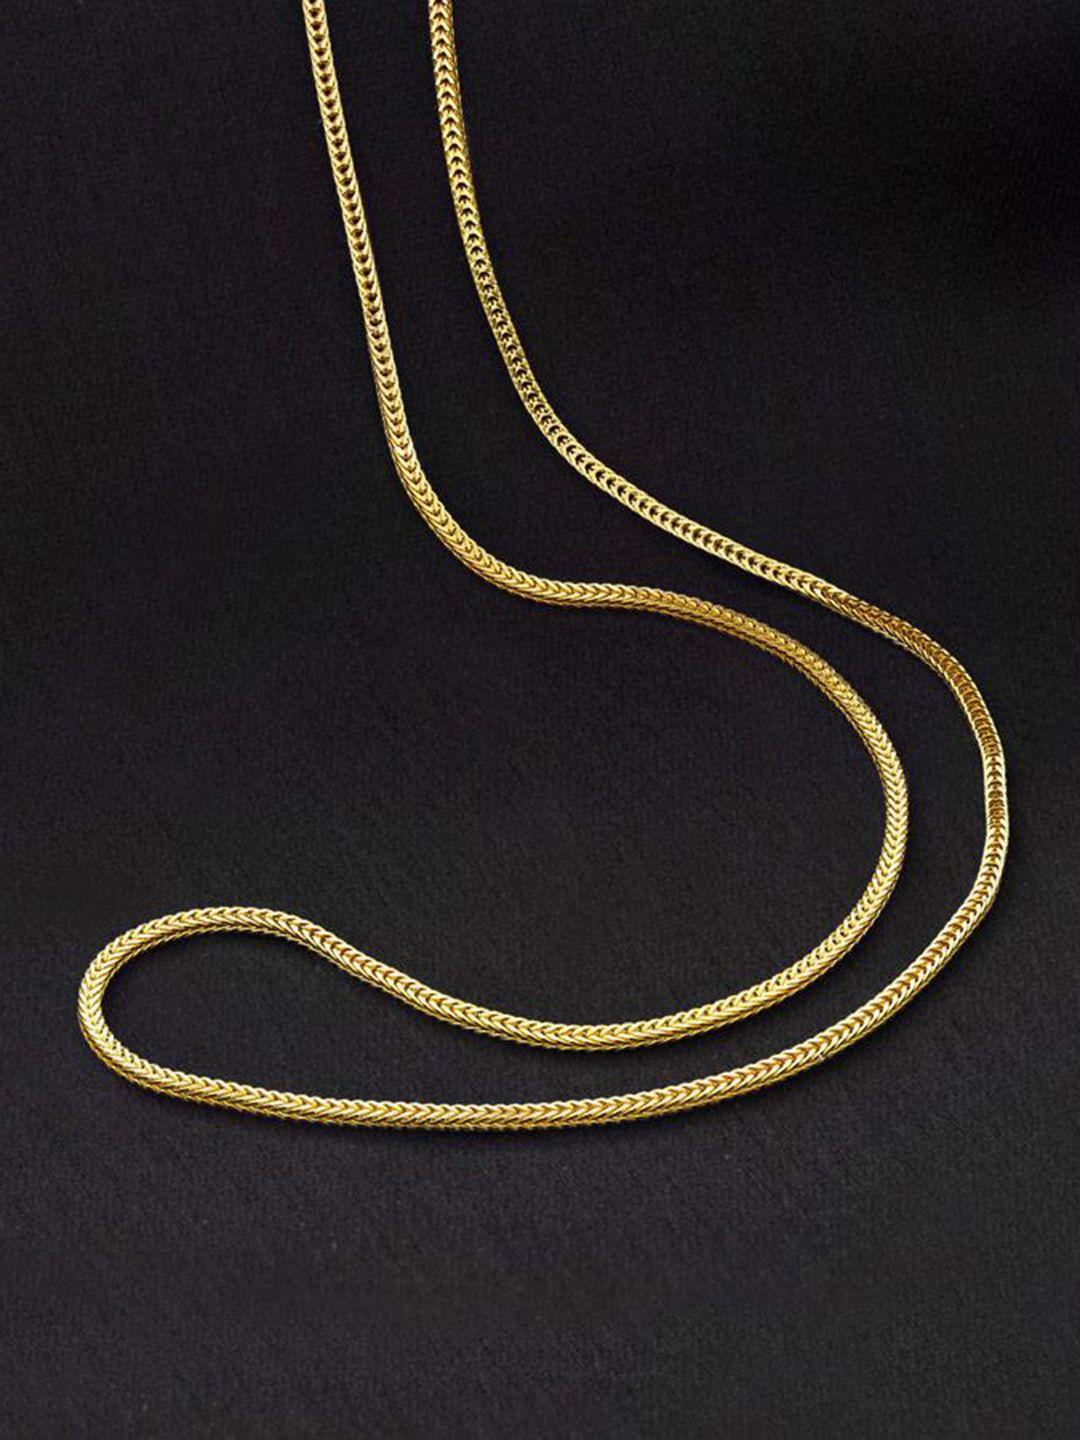 candere a kalyan jewellers company lightweight 22kt bis hallmark gold chain-4.47gm